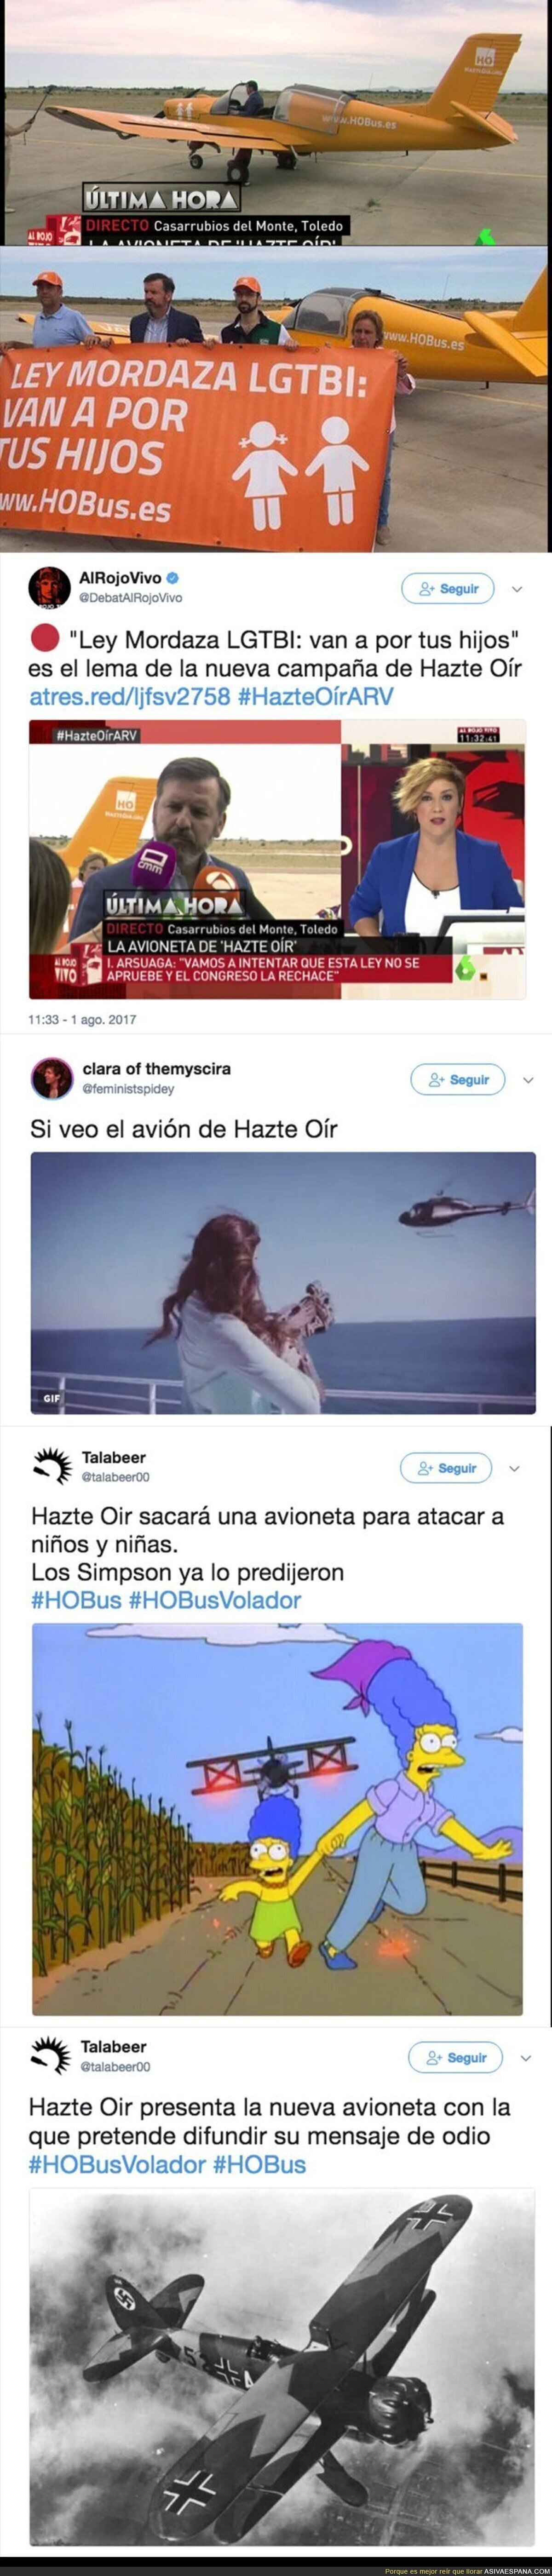 Este es el polémico mensaje de odio que difundirá 'Hazte Oír' en su avioneta sobrevolando España